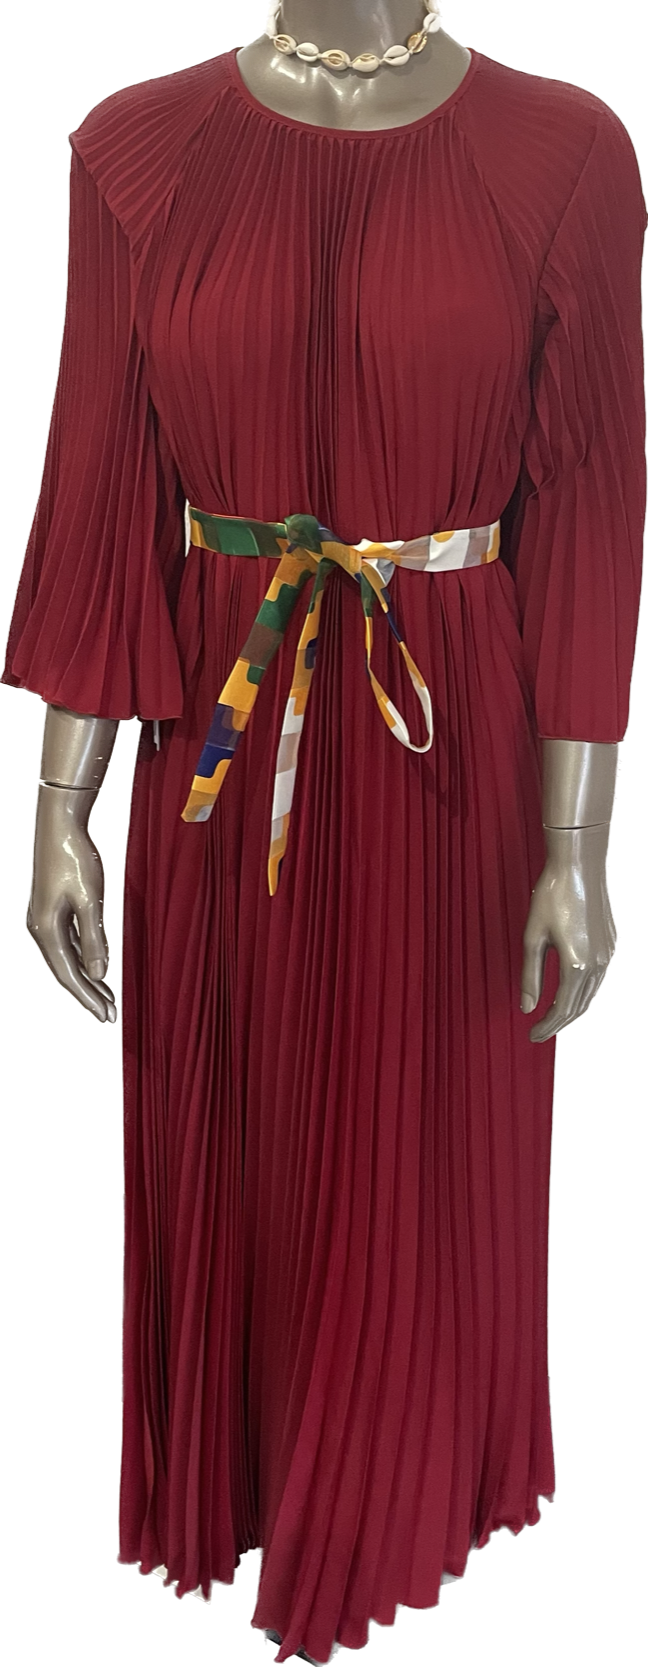 Robe plissée longue et élégante en tissus très tendance avec ceinture wax